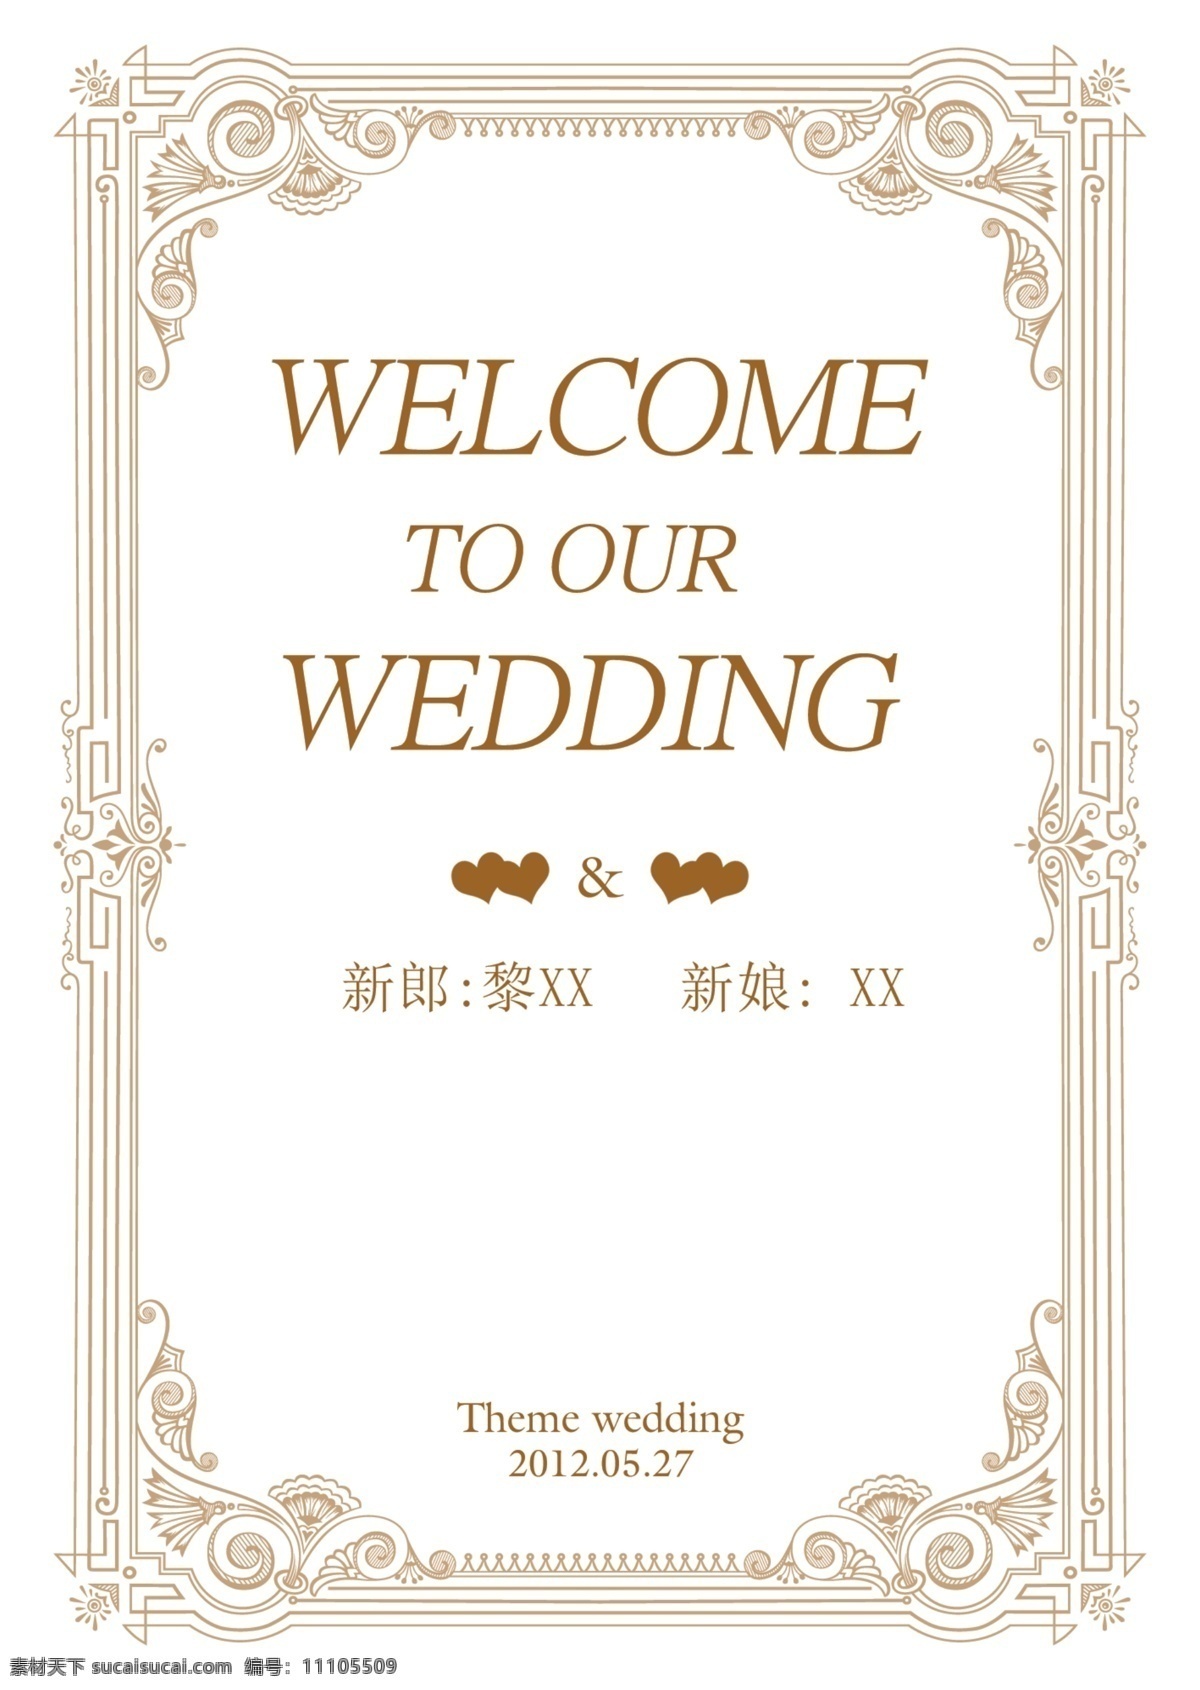 婚礼主题迎宾 婚礼主题牌 婚礼席位图 婚礼迎宾 婚礼指示牌 婚礼导视 路牌 水墨花朵 水彩花朵 共享 婚礼logo 欧式花纹